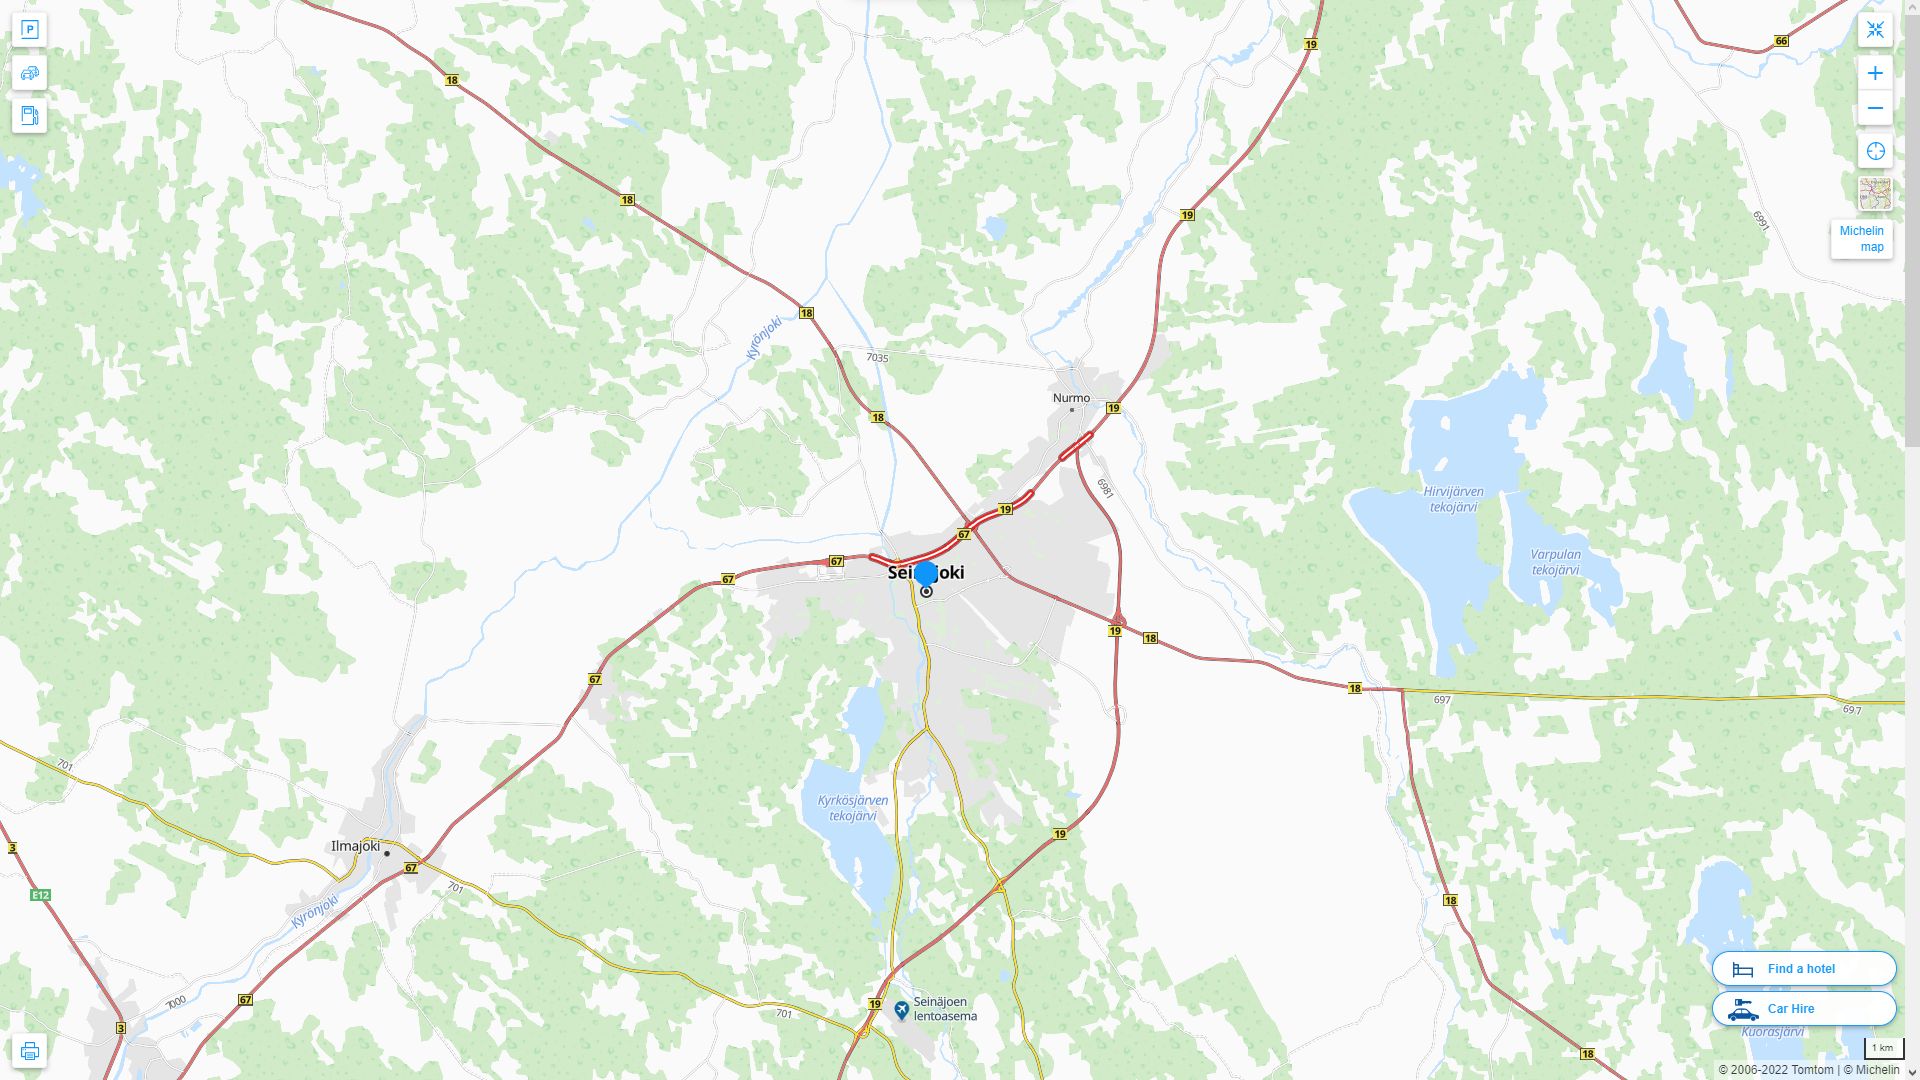 Seinajoki Highway and Road Map